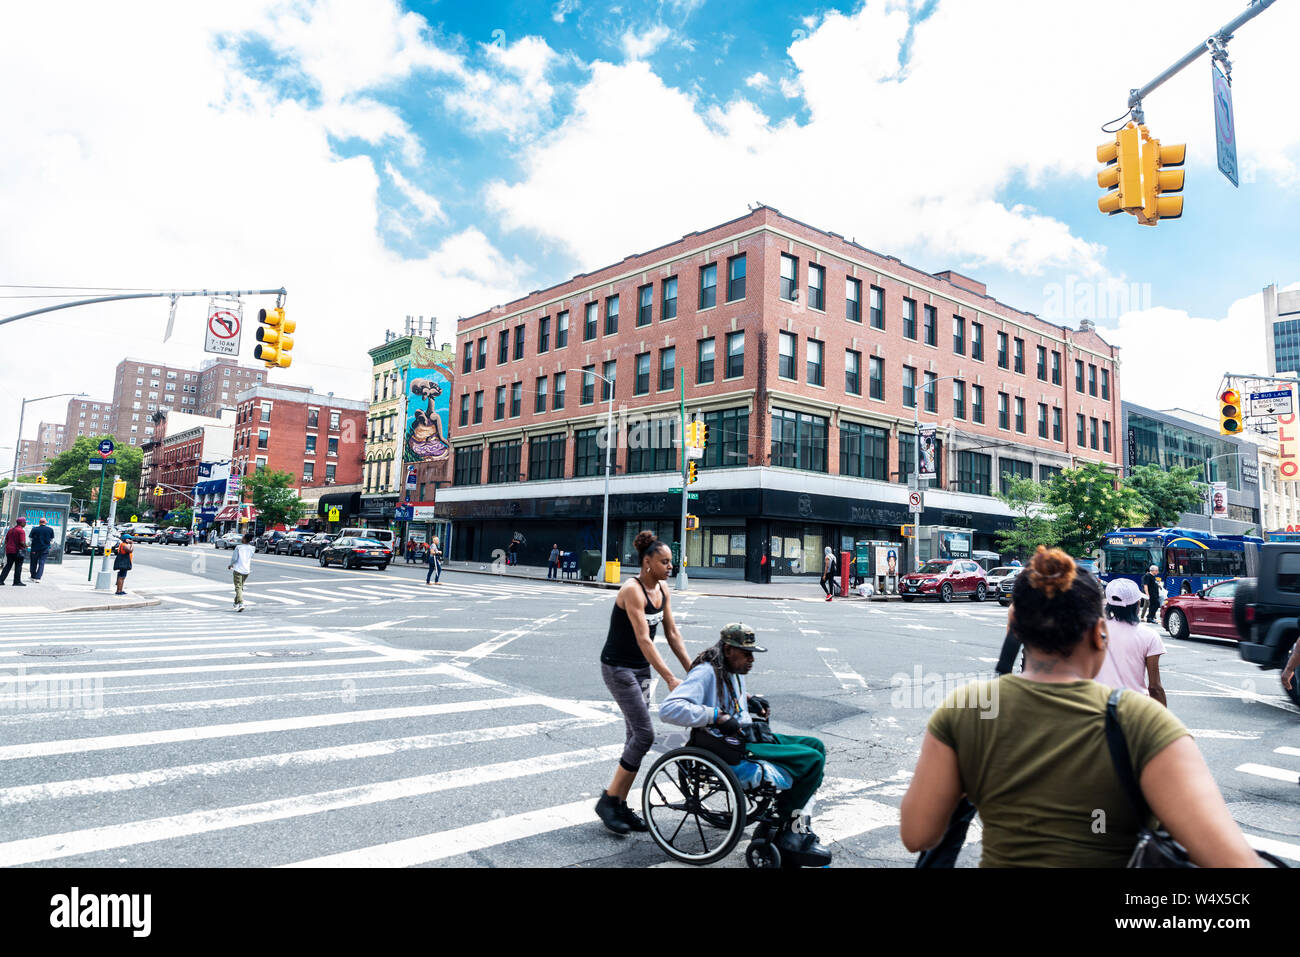 New York City, USA - August 1, 2018: Junge Frau treibt ein Rollstuhl mit einem alten schwarzen Mann auf einer Straße in Harlem, New York City, USA Stockfoto